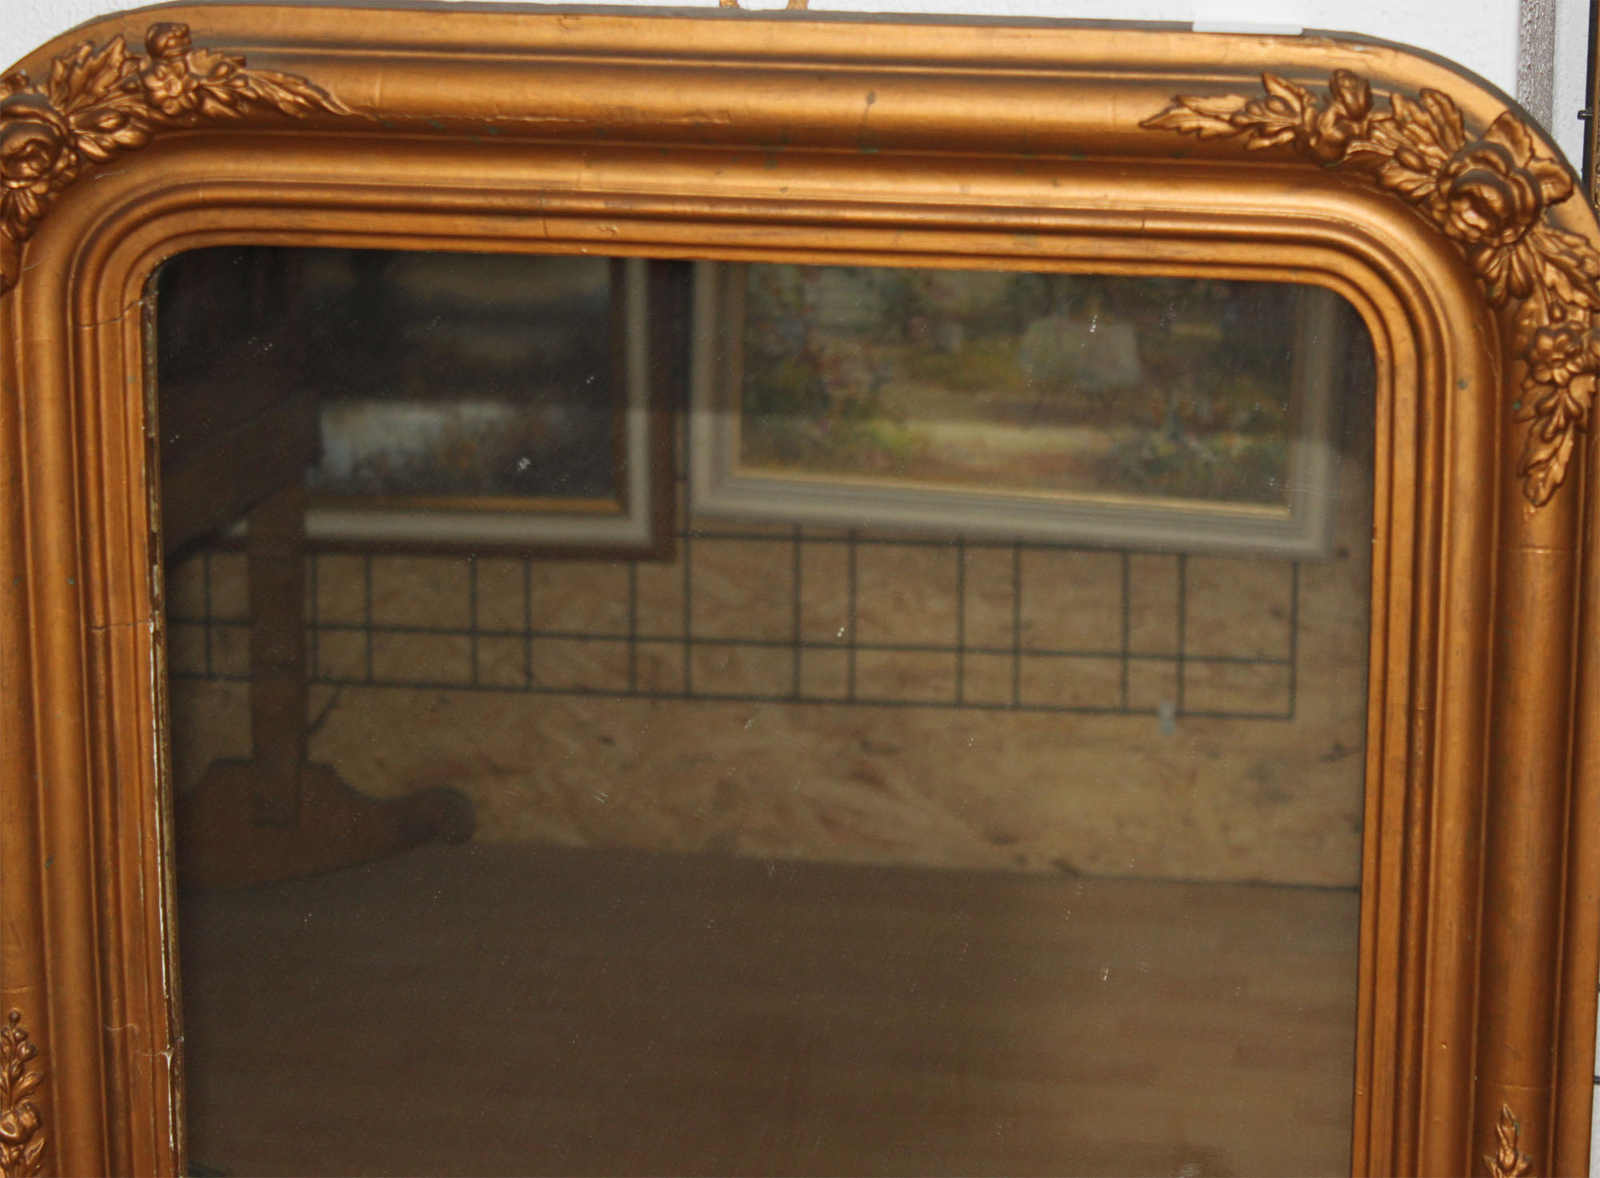 Spiegel im Goldrahmen, 95 x 60 cm, Rahmen teilweise defektMindestpreis: 20 EUR - Image 2 of 2